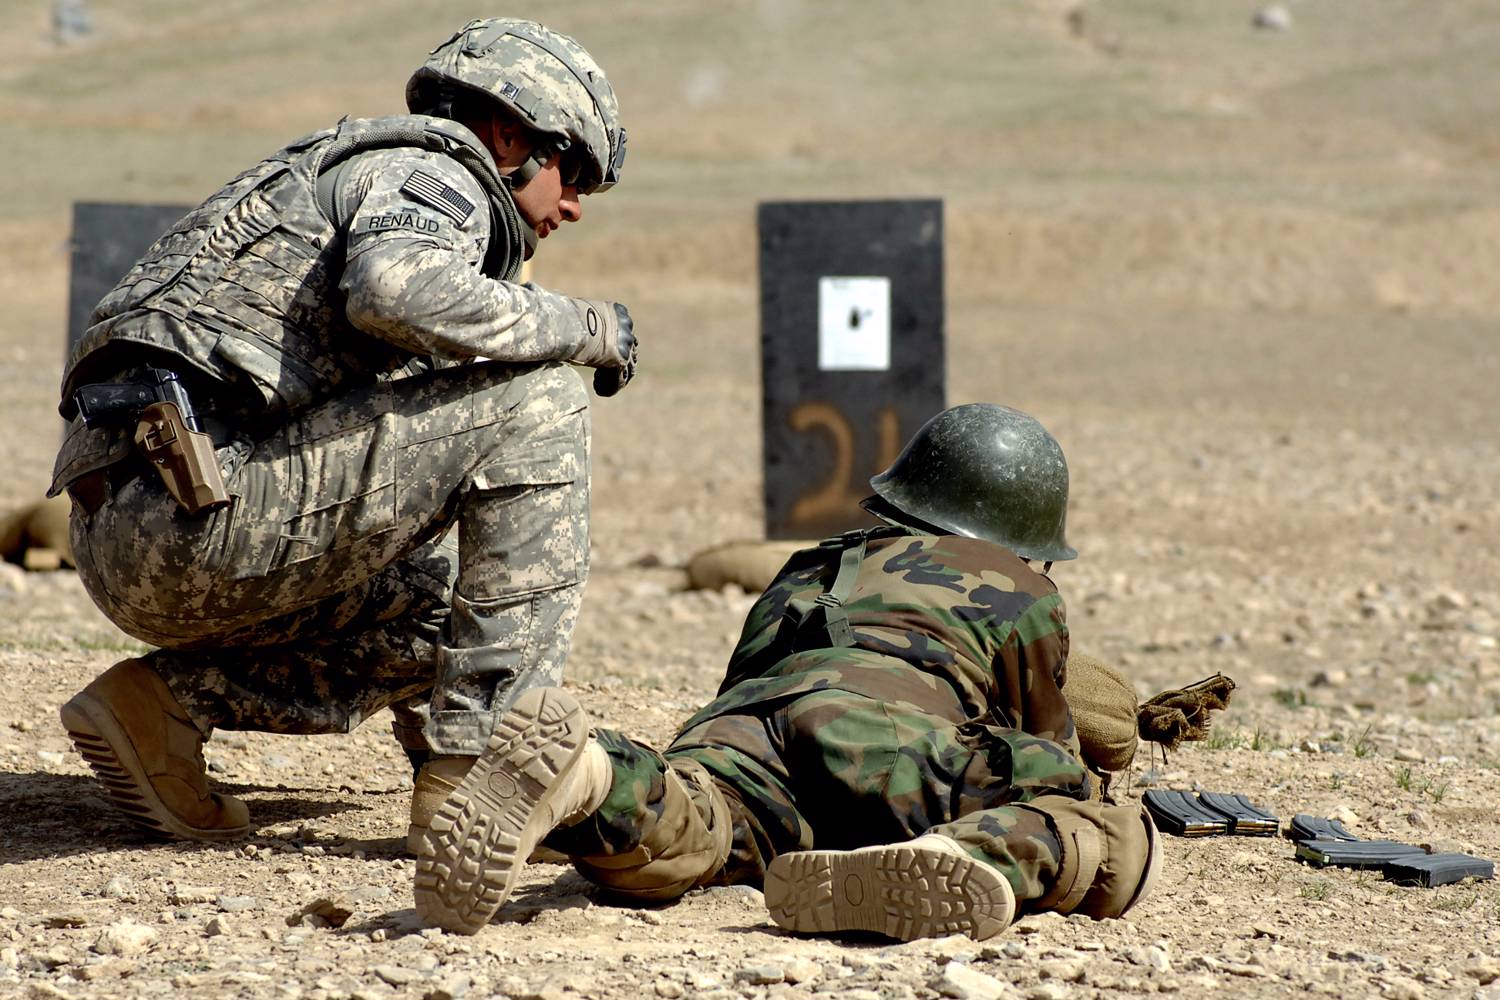  Photo: U.S. Army